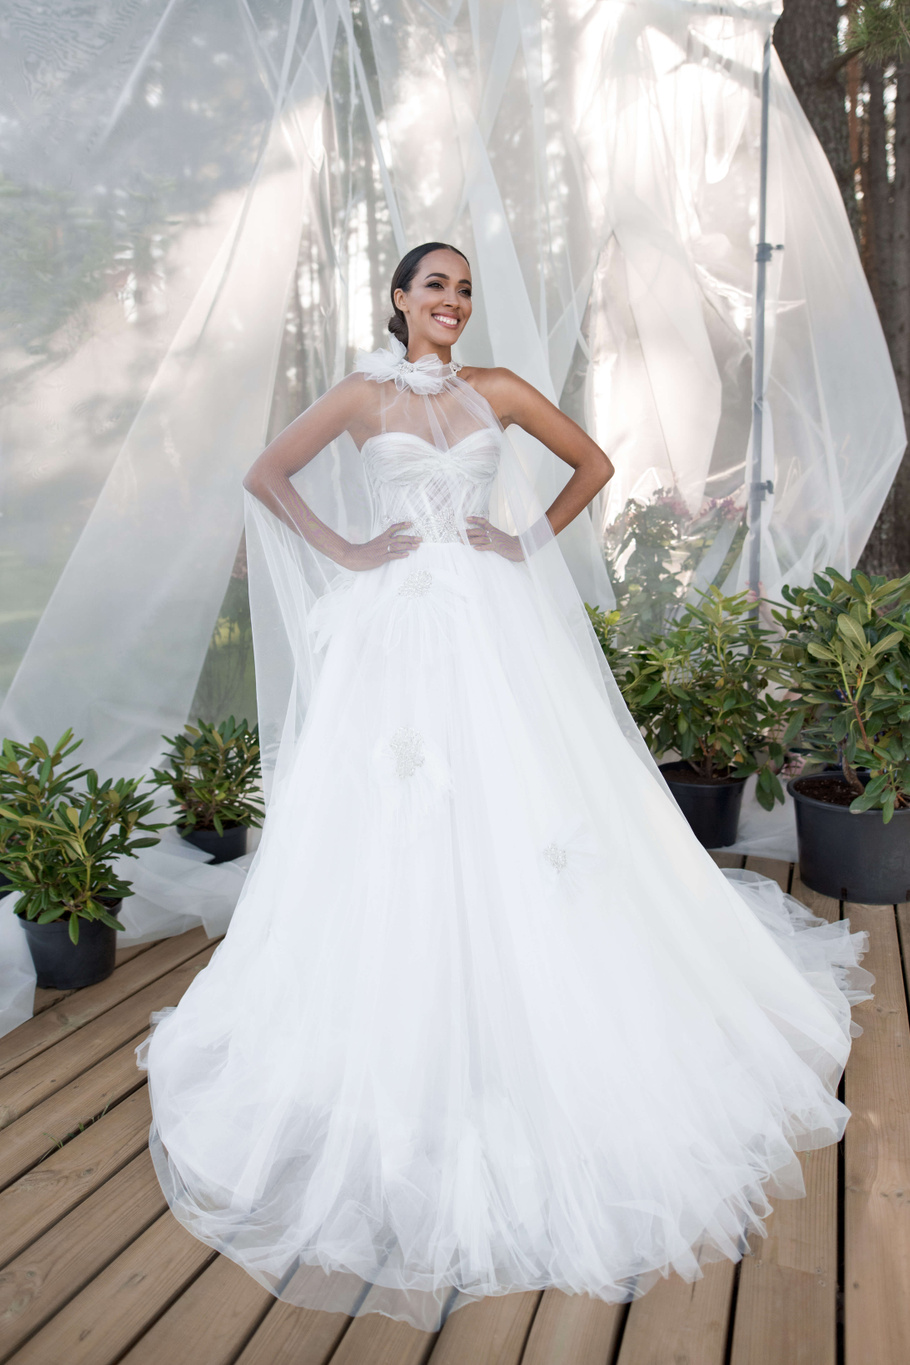 Купить свадебное платье «Рамили» Бламмо Биамо из коллекции Нимфа 2020 года в Санкт-Петербурге